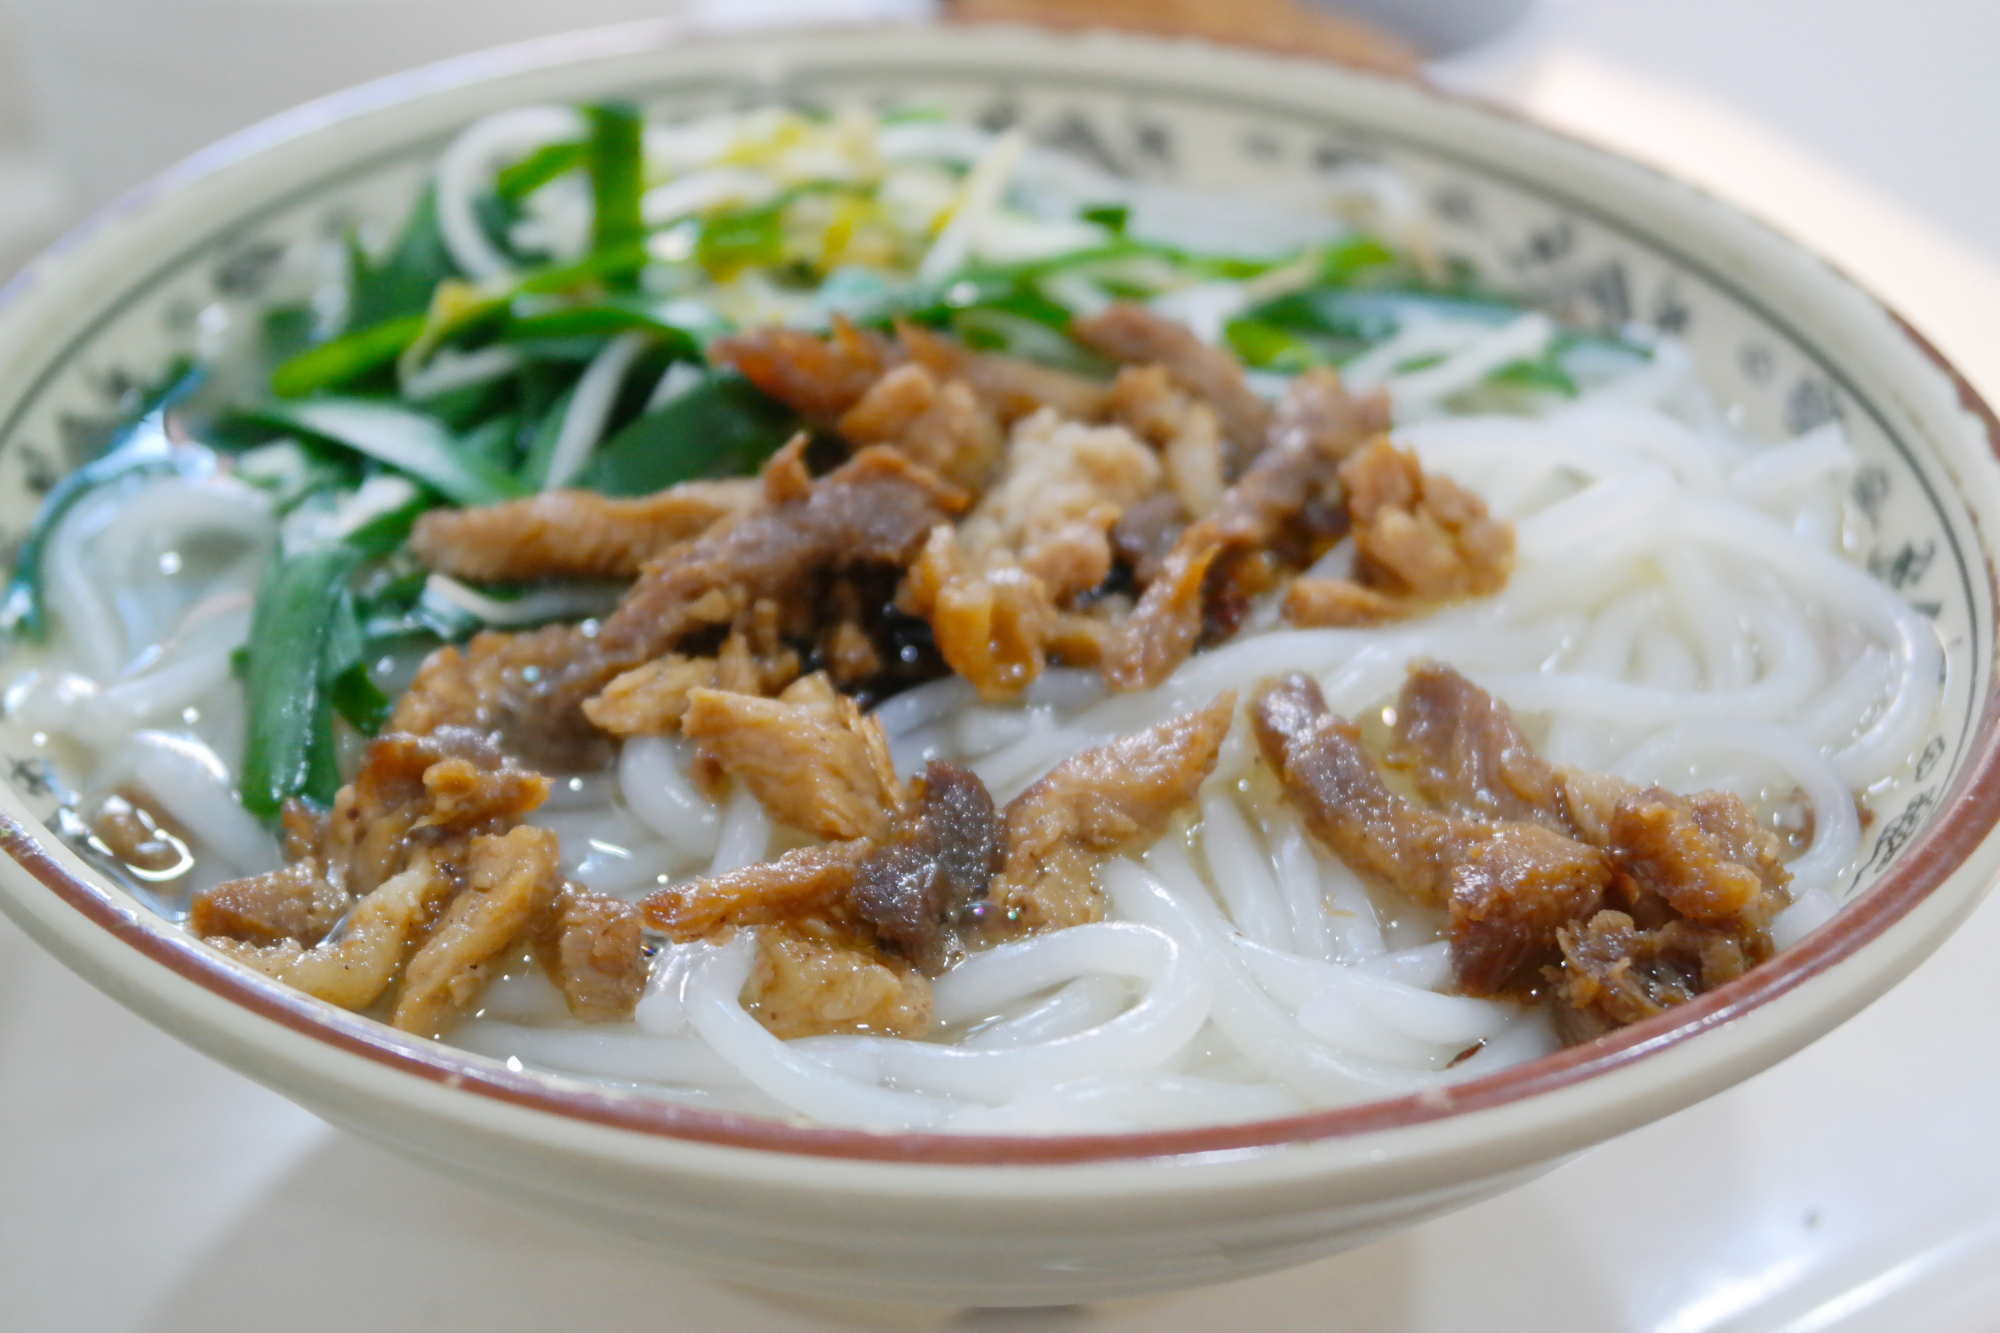 中国米粉系列第1期:福建龙岩的清汤粉,韭菜豆芽式配菜法是特色!